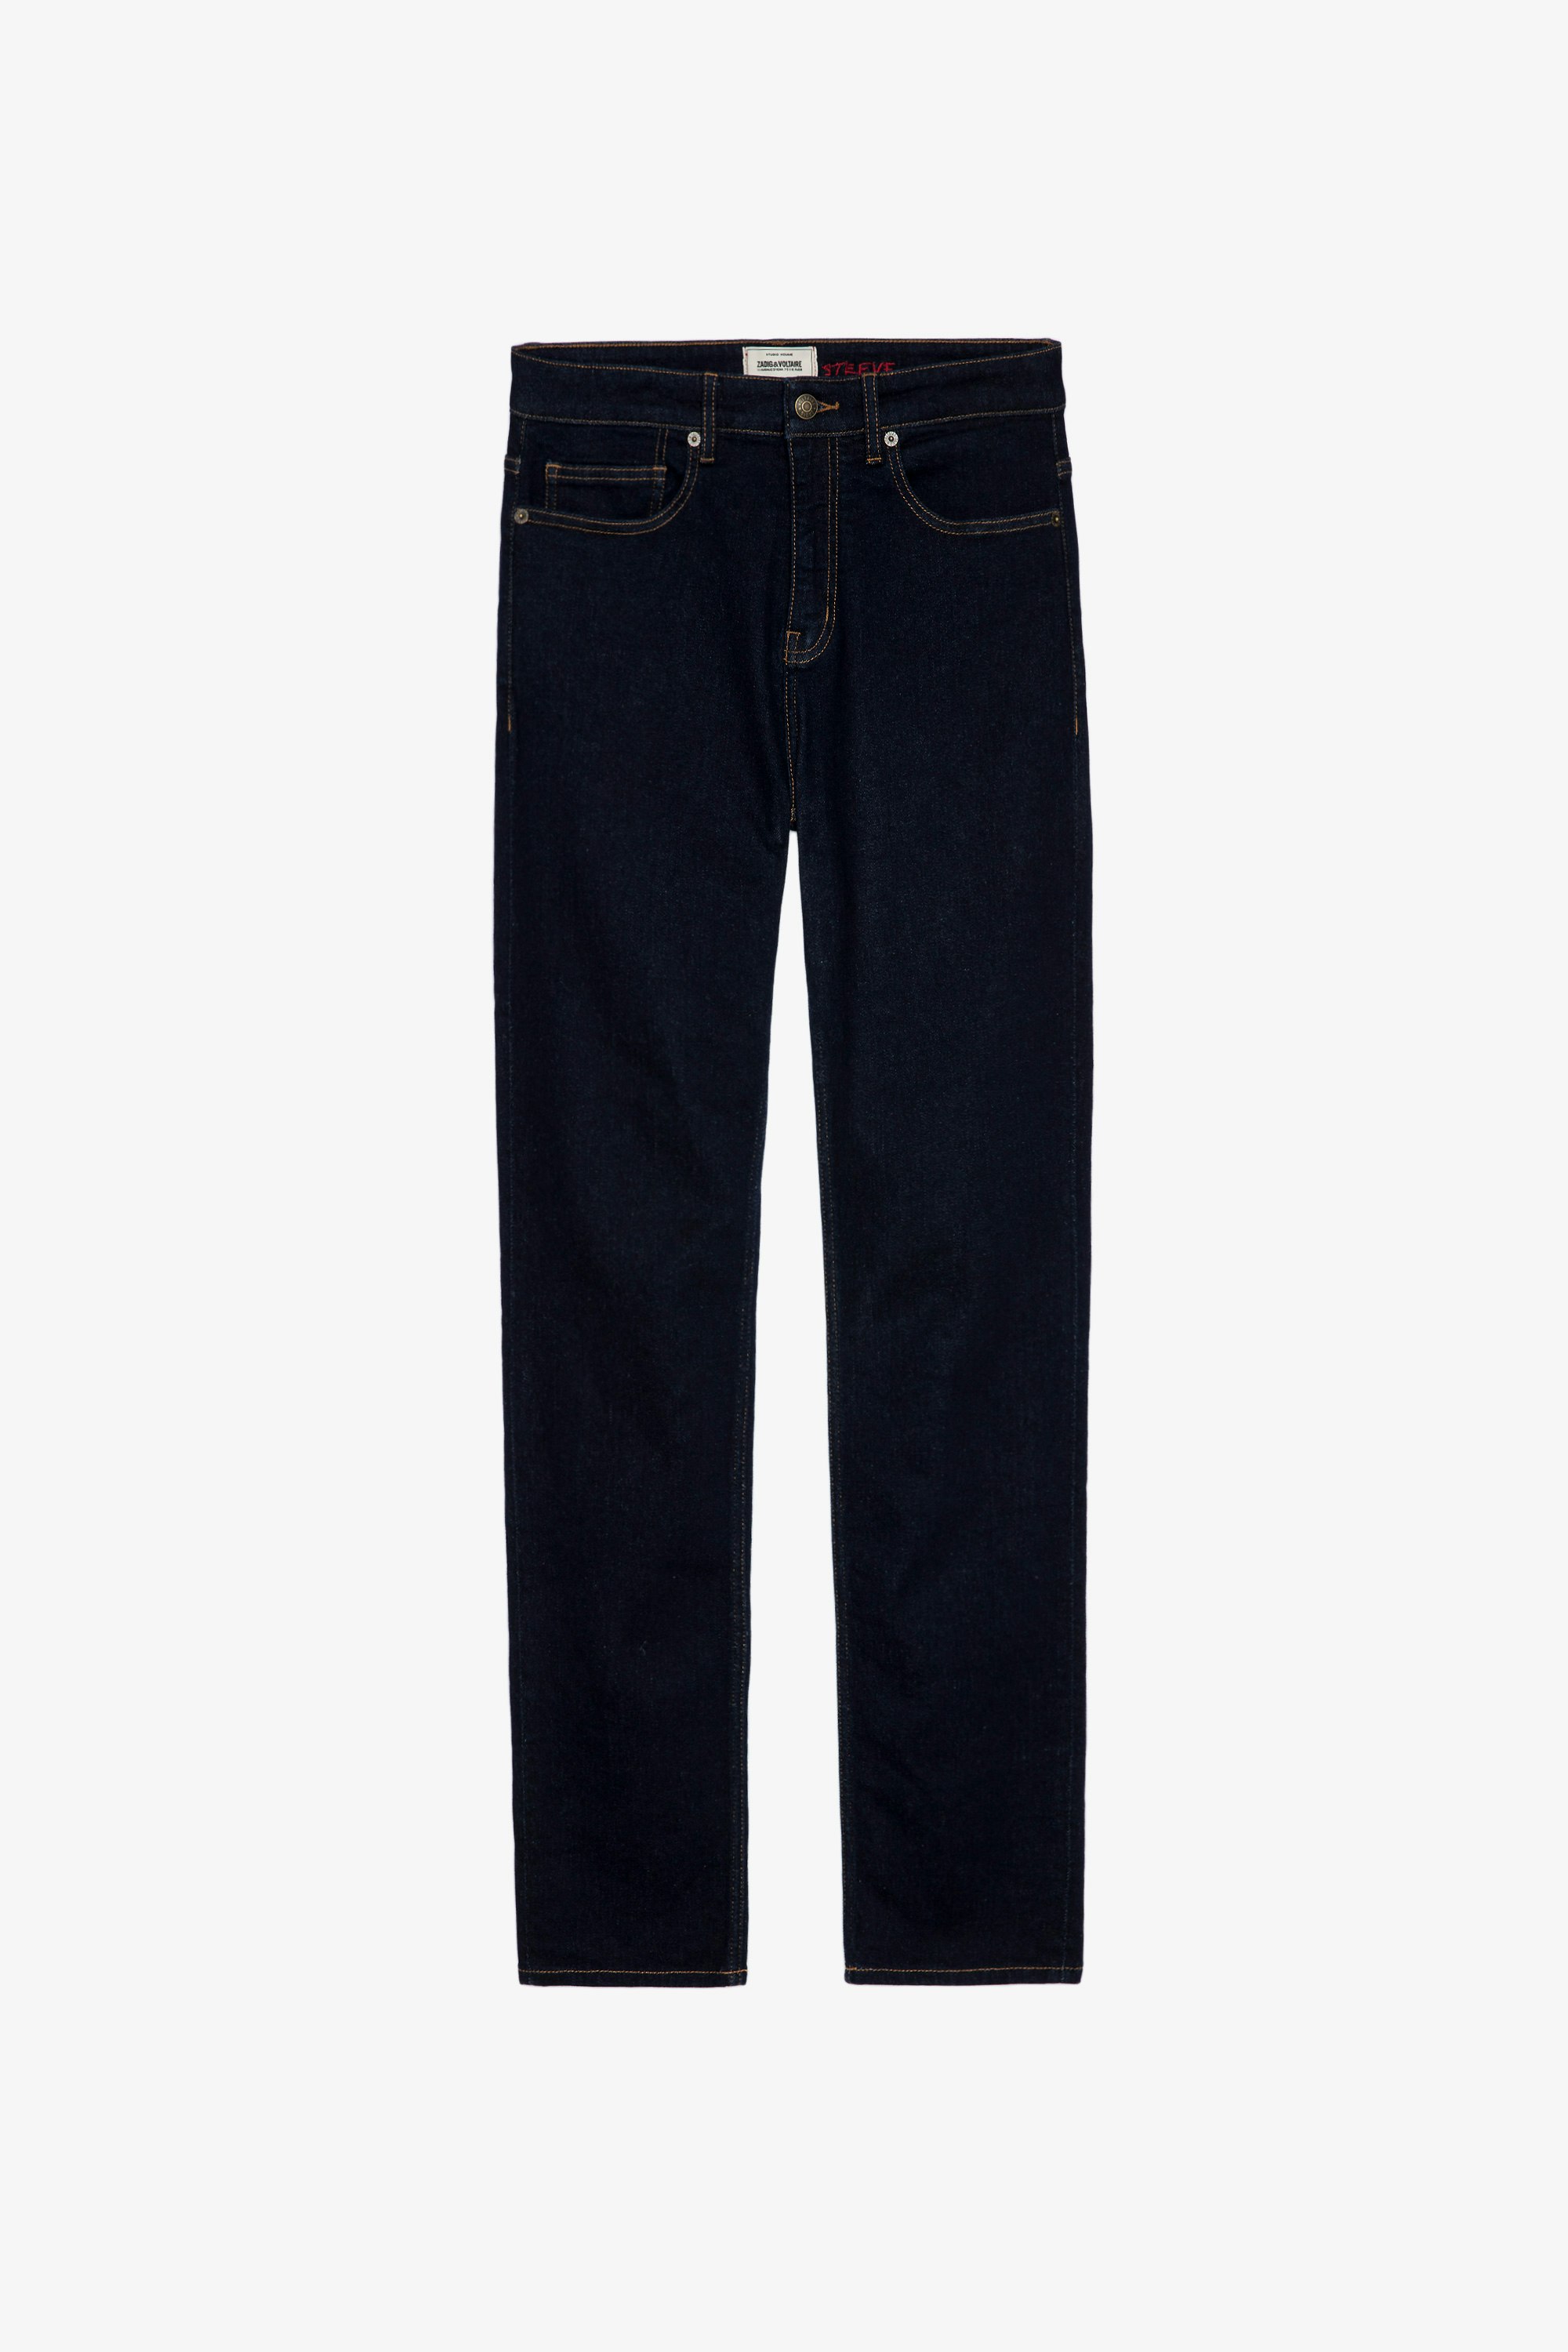 Jeans Steeve Herren-Jeans aus Denim mit Cut am Knie